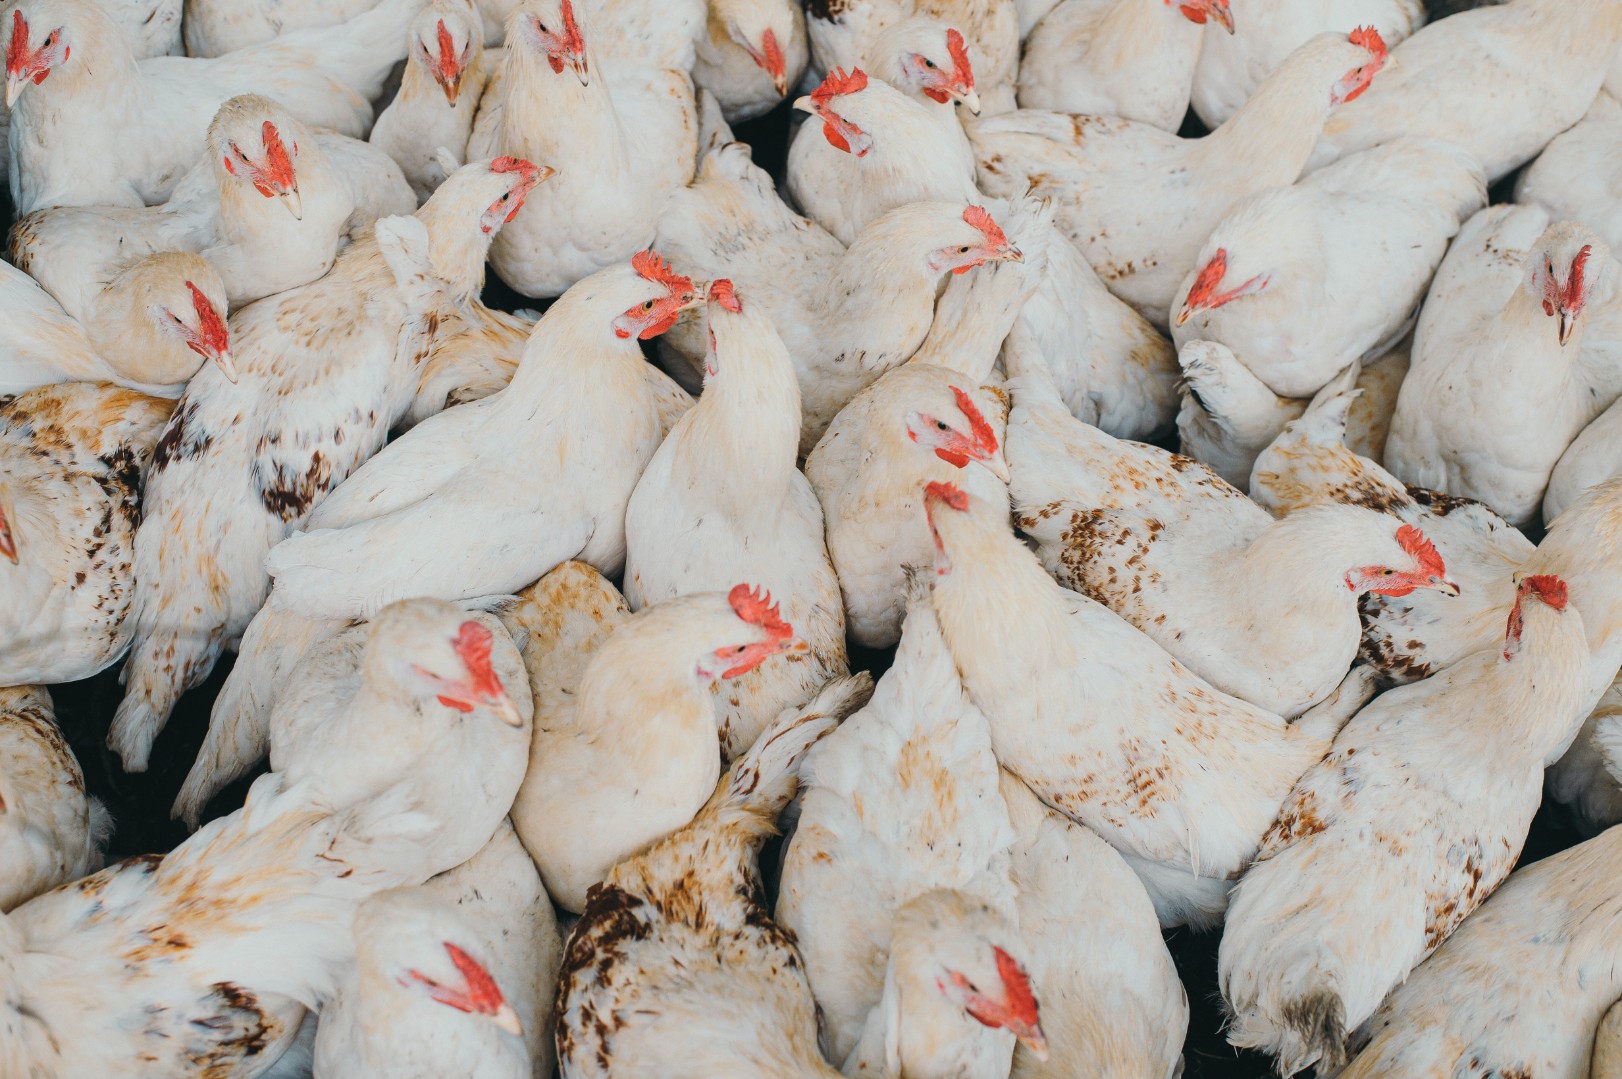 Три четверти поголовья птицы в Подмосковье застрахованы на случай гриппа птиц